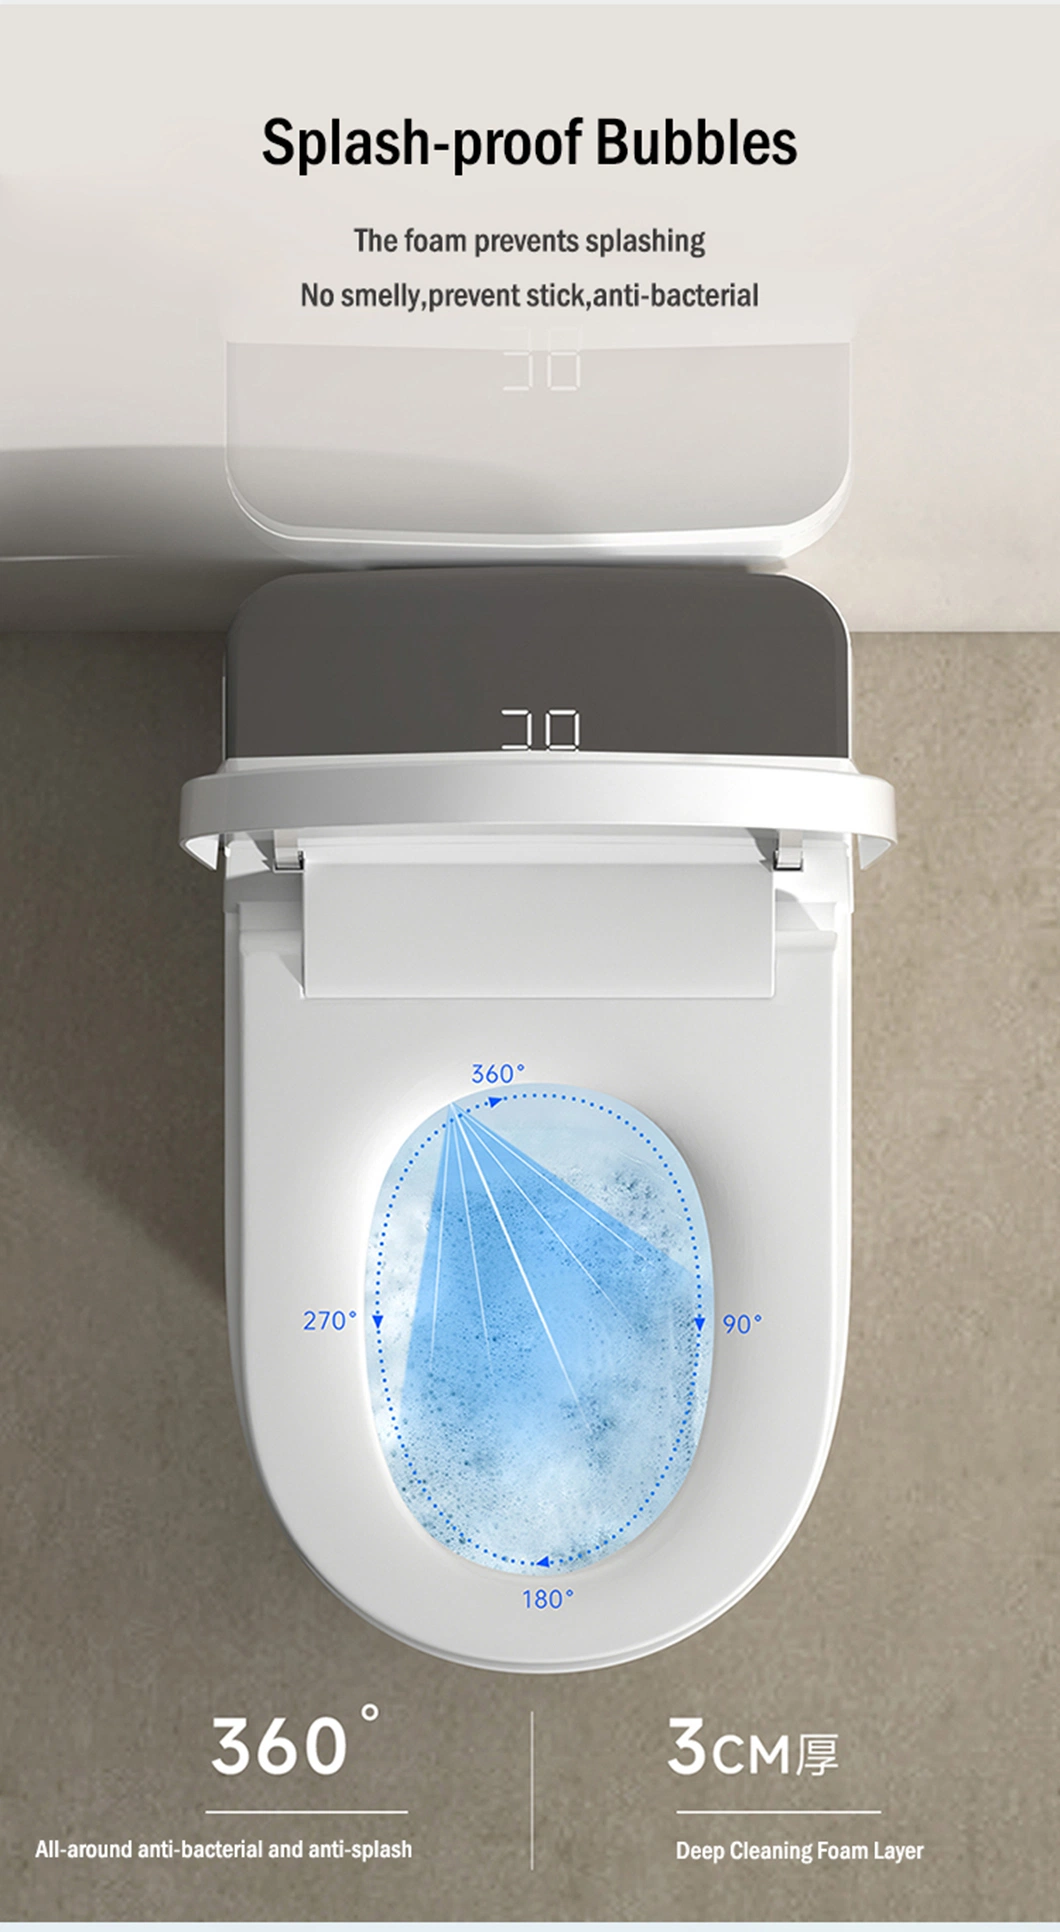 Auto Sensor Flush Open Electric Bathroom One Piece Smart Wc Toilet Bowl Automatic Intelligent Toilet